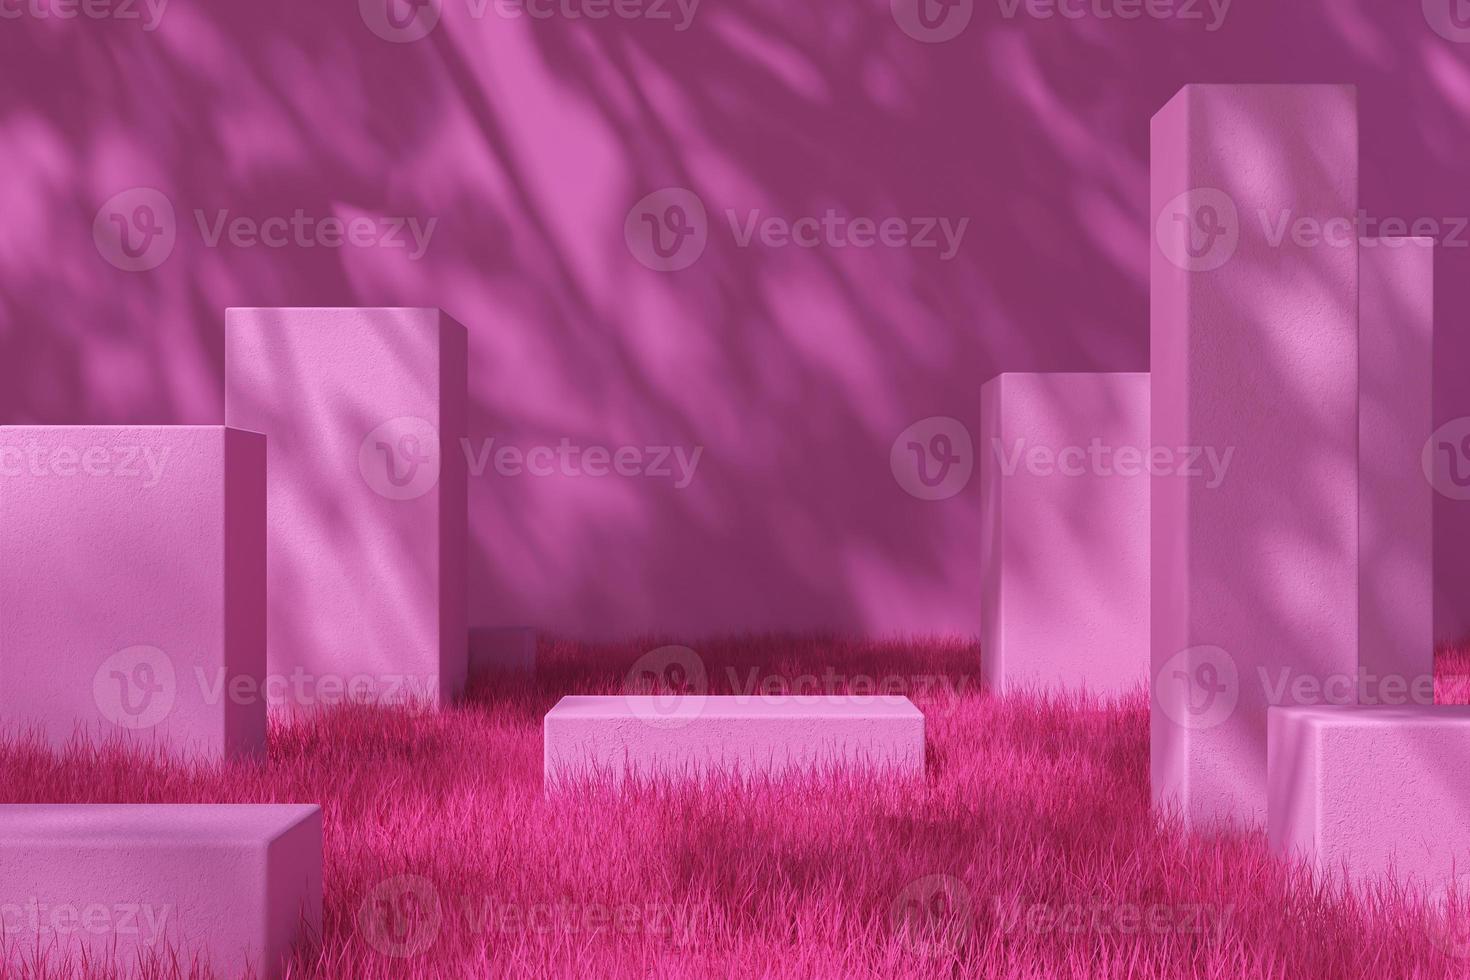 plataforma rosa na grama e parede rosa, sombra de árvore na parede, fundo de maquete rosa para apresentação do produto. renderização em 3D foto